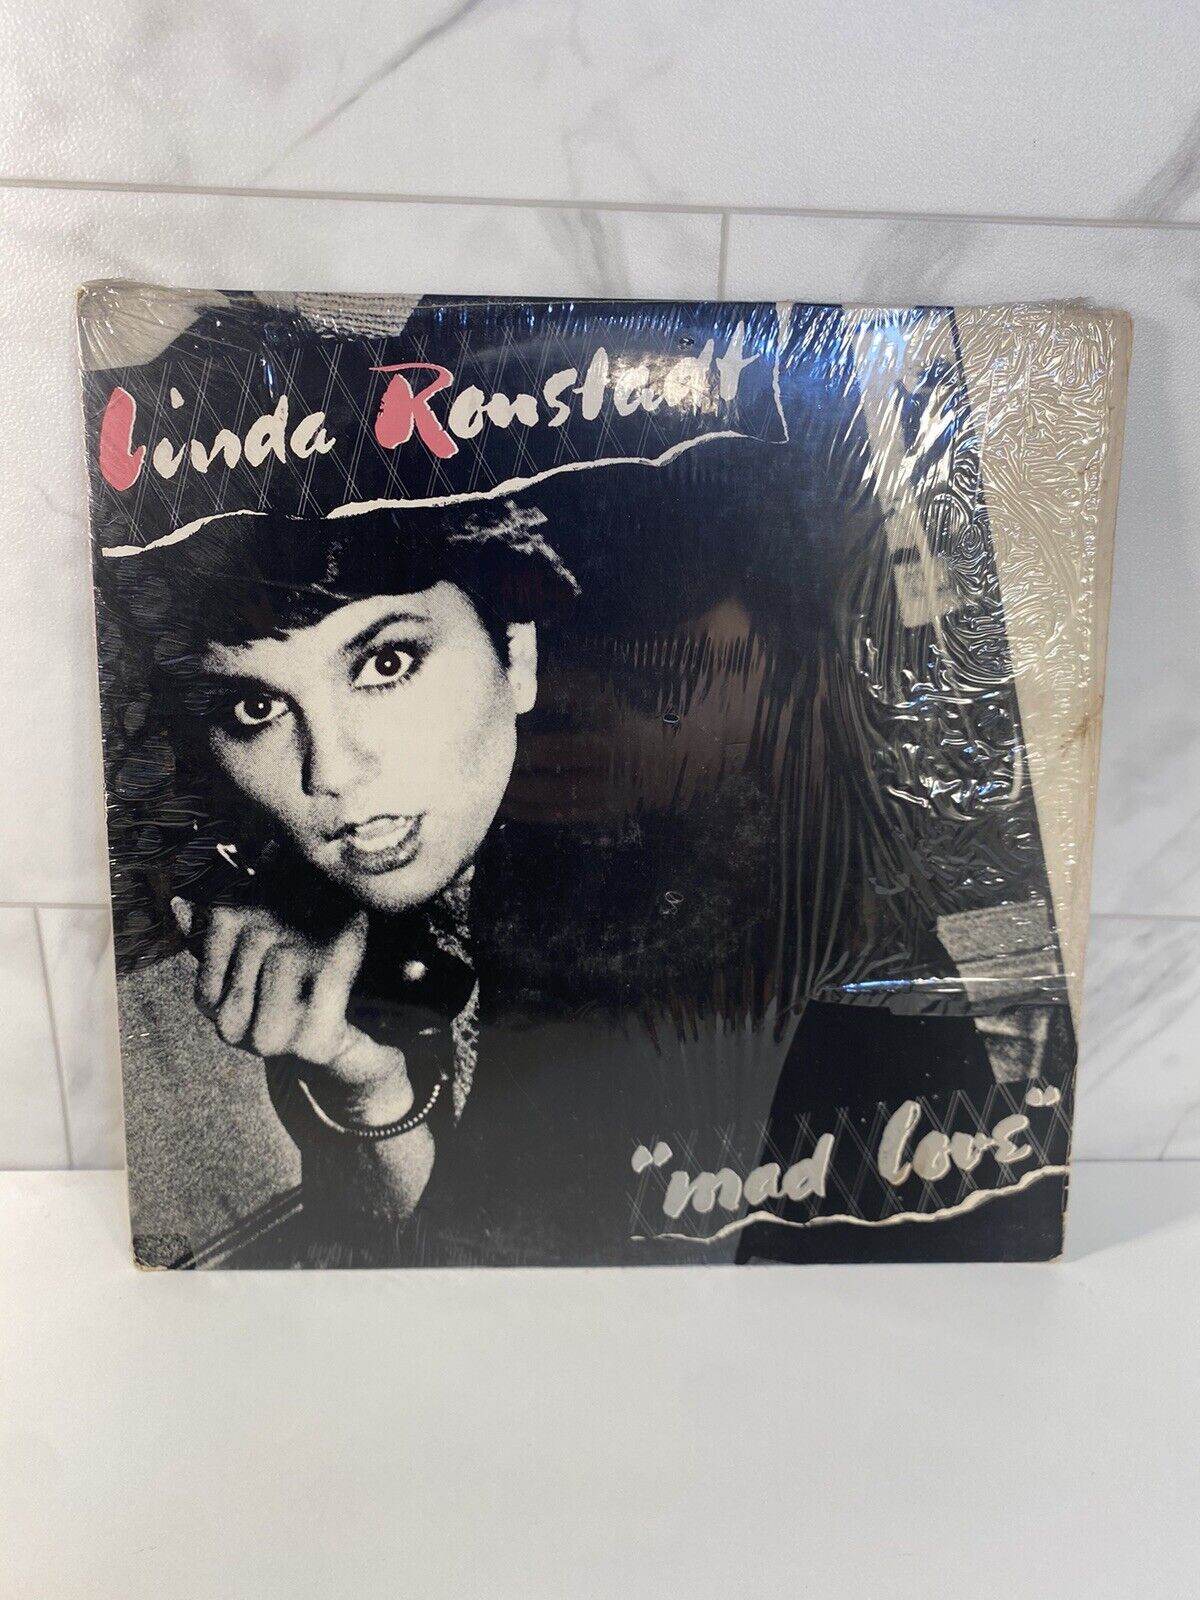 Linda Ronstadt ‎"Mad Love" 1980 5E-510 12" LP Vinyl Record Rock Album Good